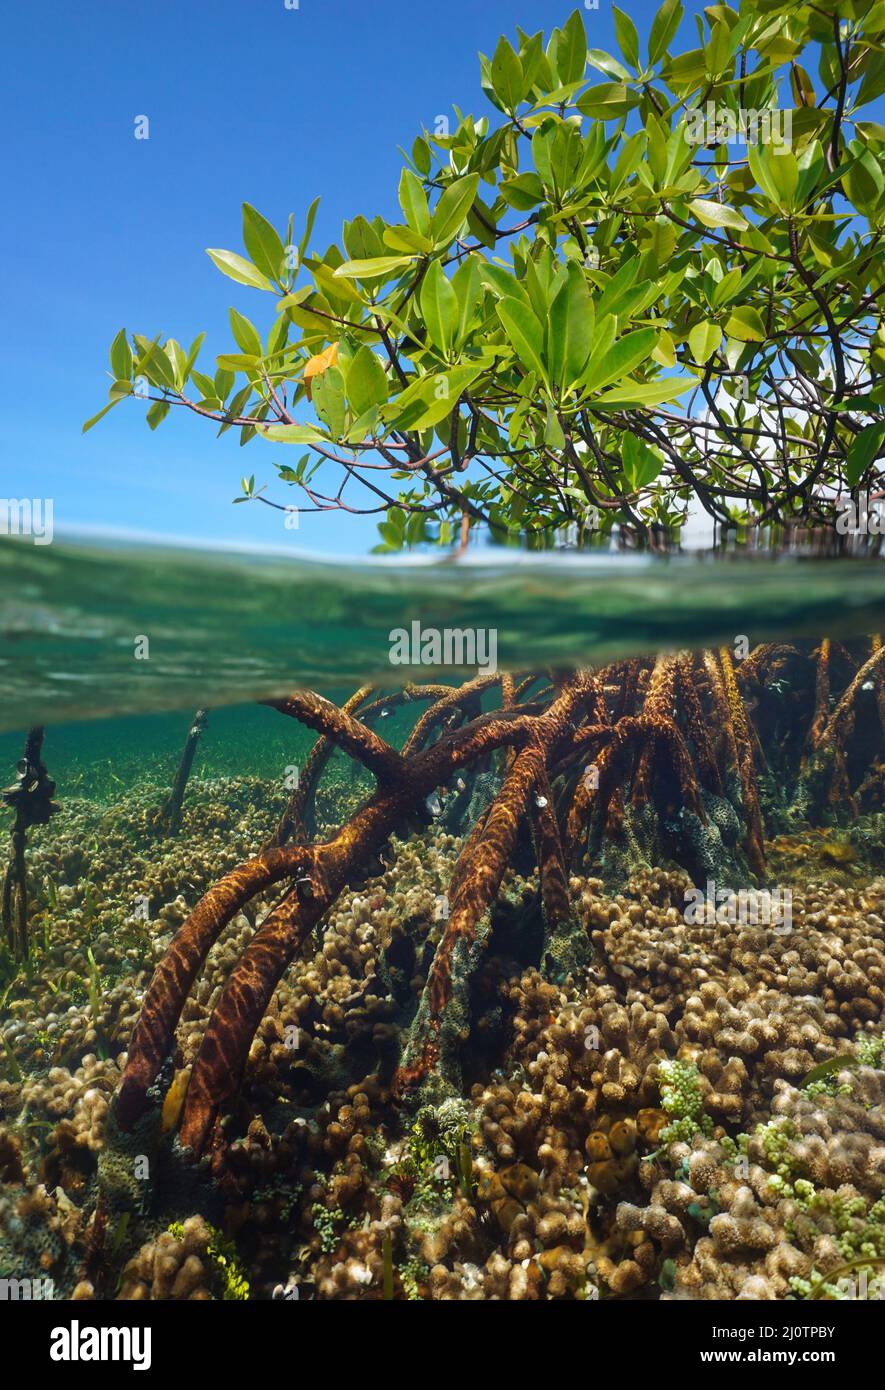 Mangrovenbaum im Meer, Laub und Wurzeln Split Level Blick über und unter Wasser Oberfläche in der Karibik ( rote Mangrove Rhizophora Mangle ) Stockfoto